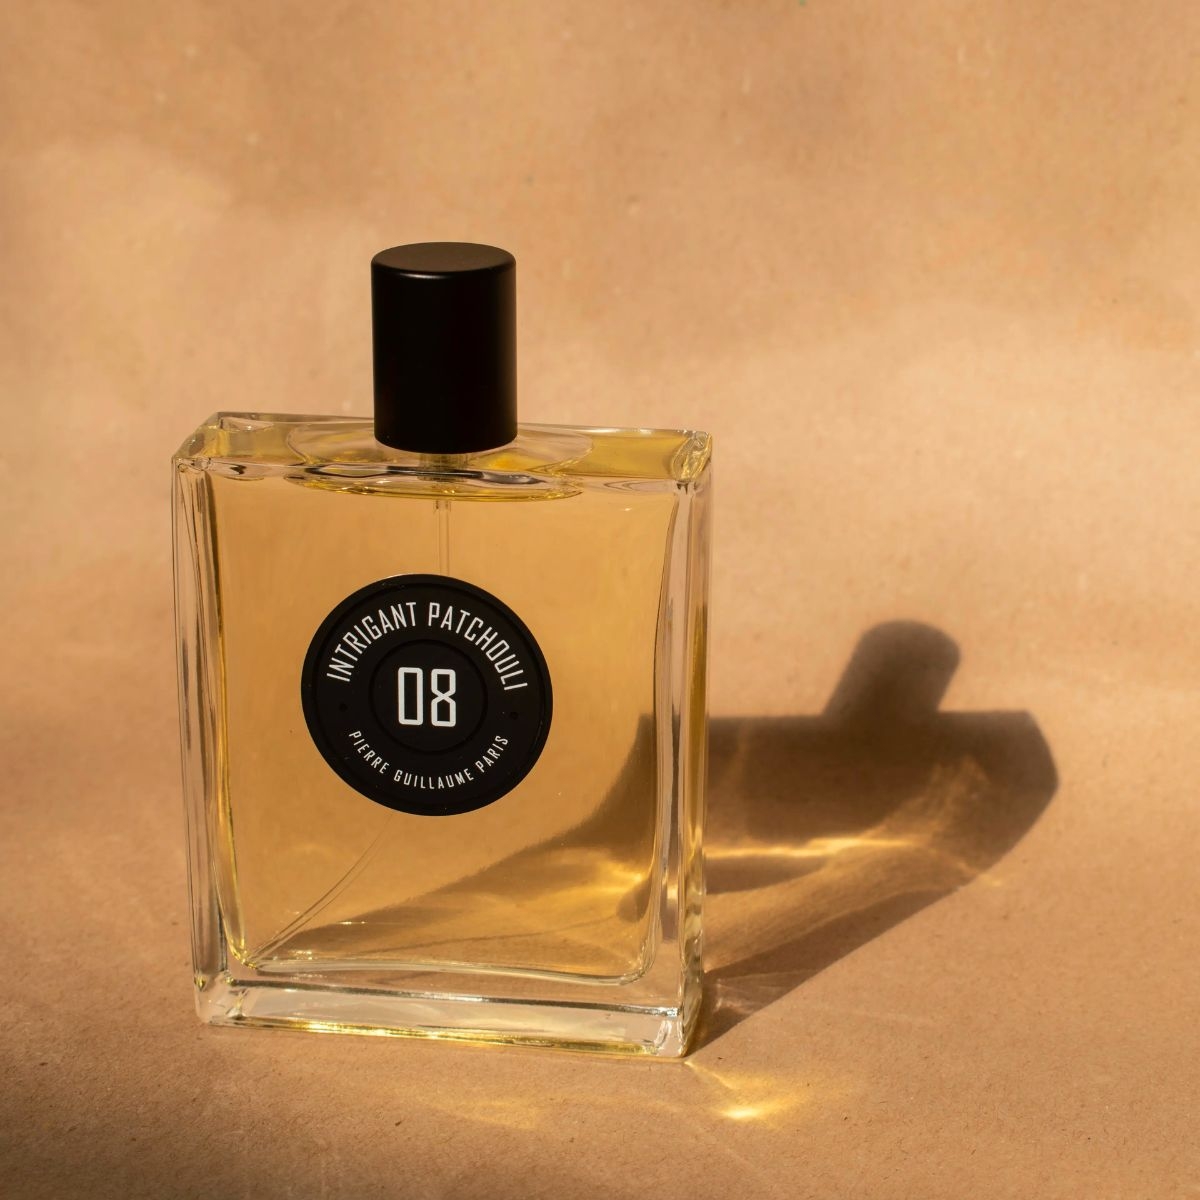 Afbeelding van 08 Intrigant Patchouli eau de parfum 100 ml van het merk Pierre Guillaume Paris